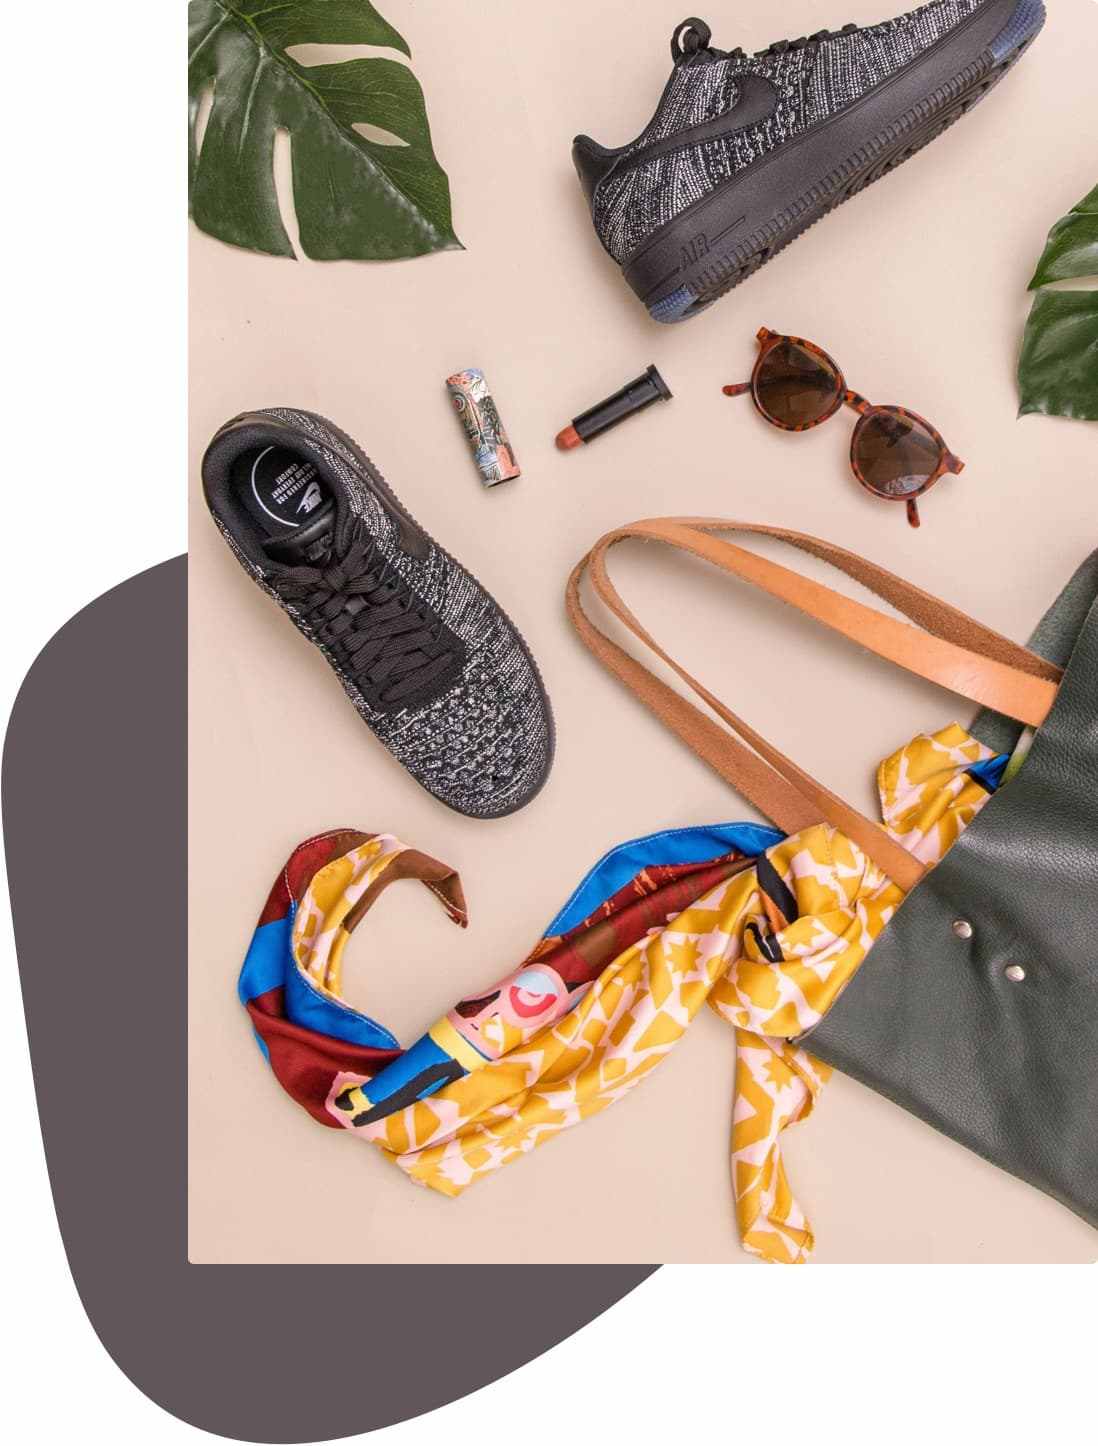 Bolsa, mascada, lentes de sol, zapato deportivo y otros productos sobre una superficie